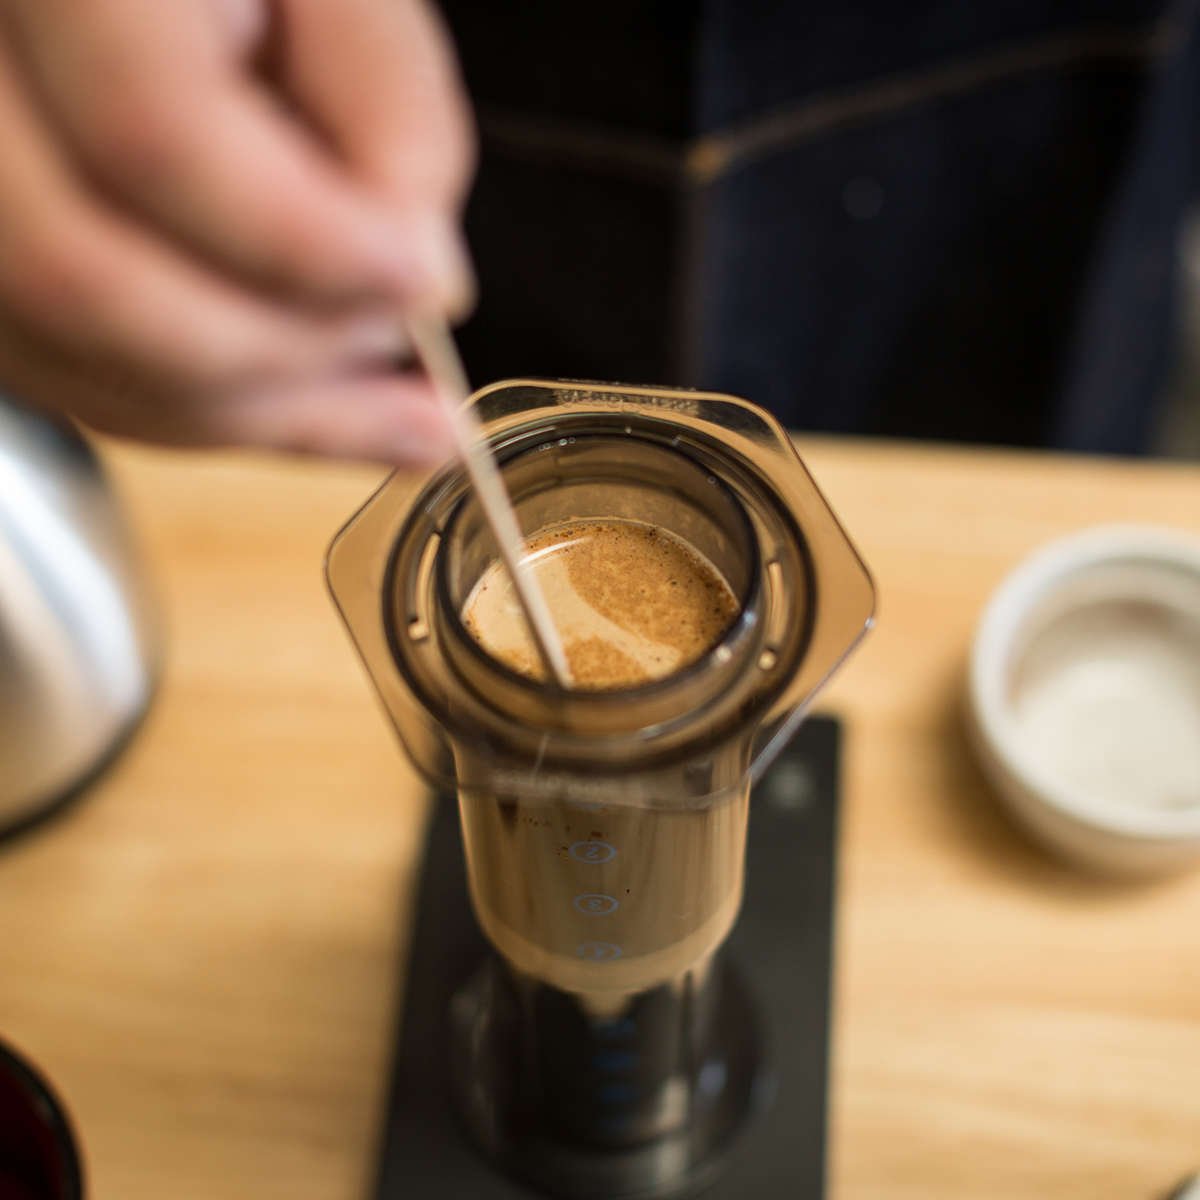 Stirring coffee in Aeropress